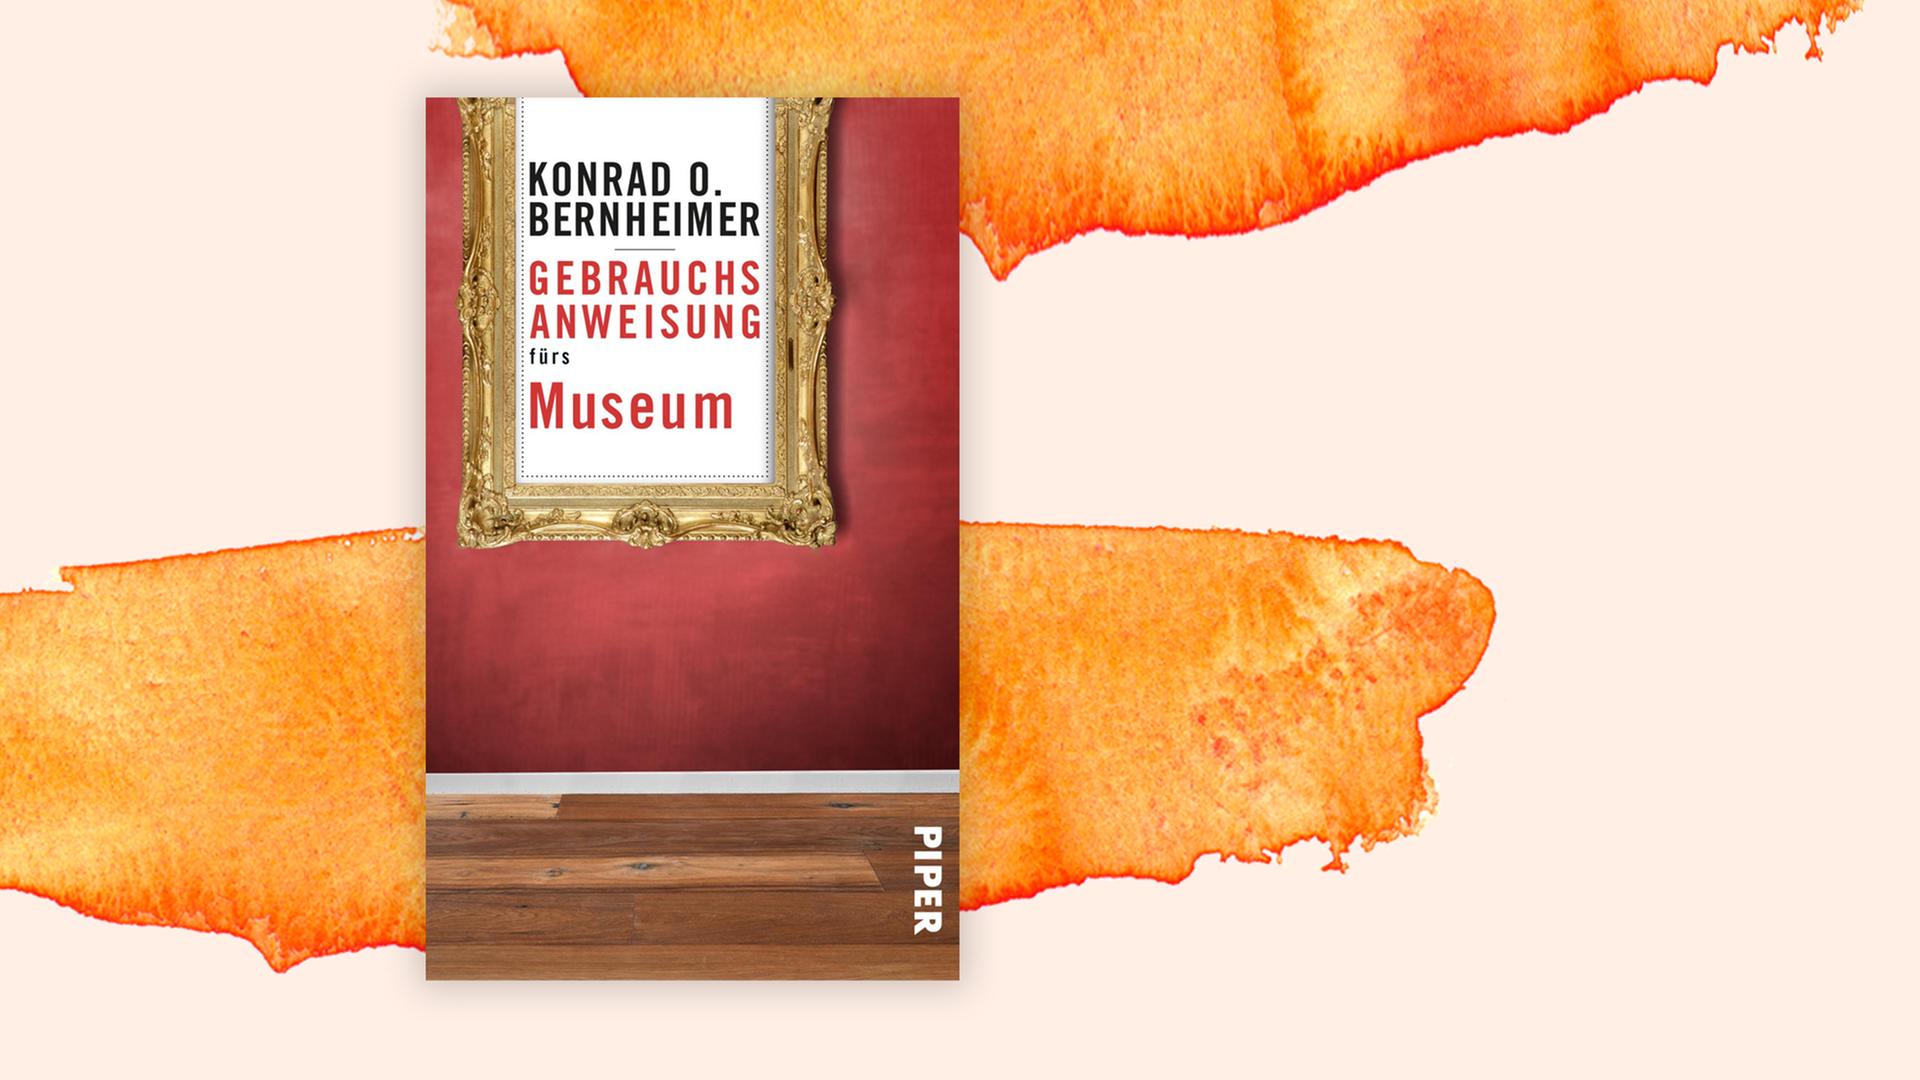 Buchcover zu "Gebrauchsanweisung fürs Museum" von Konrad O. Bernheimer